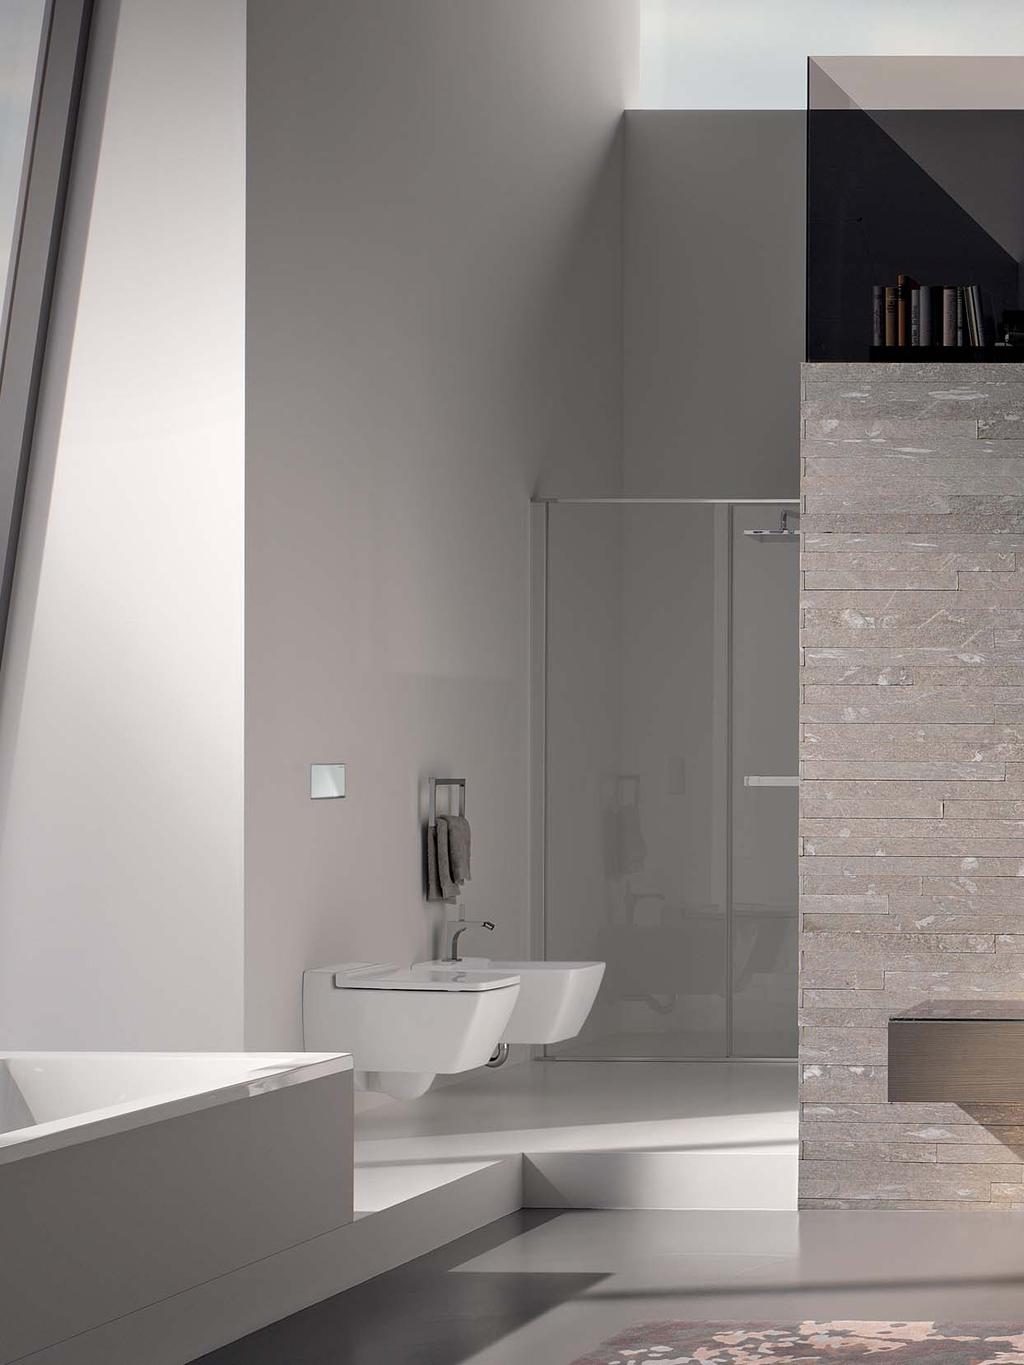 GEBERIT XENO 2 FÜRDŐSZOBAI TERMÉKCSALÁD A Geberit Xeno2 fürdőszobai designtermékcsalád az architektonikus designminimalizmust jelképezi.